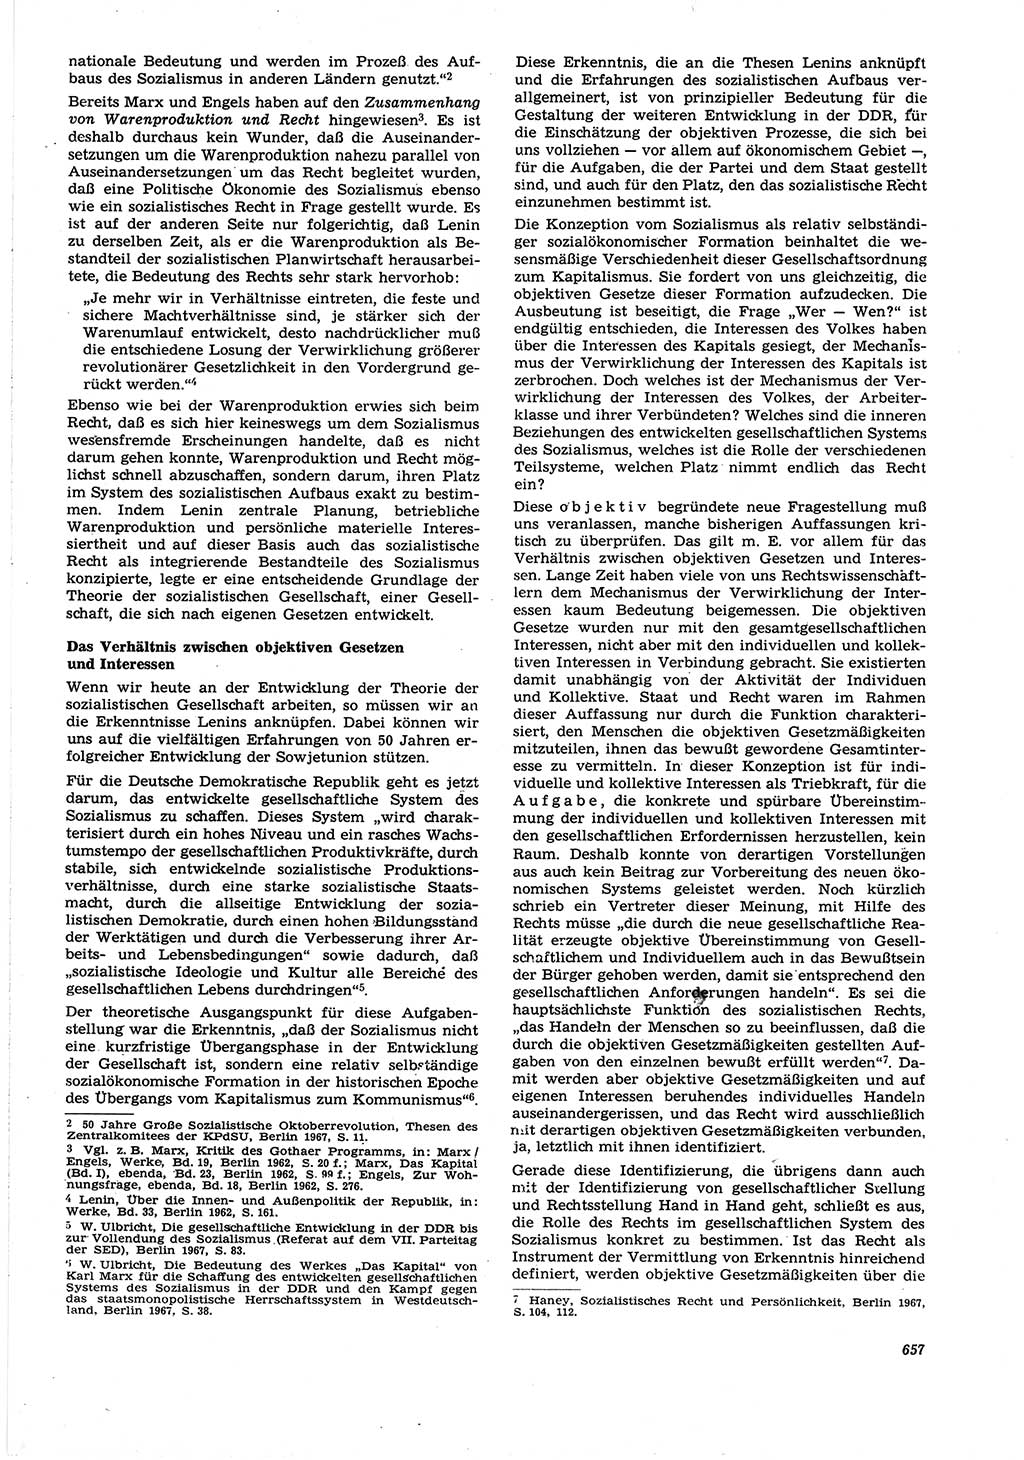 Neue Justiz (NJ), Zeitschrift für Recht und Rechtswissenschaft [Deutsche Demokratische Republik (DDR)], 21. Jahrgang 1967, Seite 657 (NJ DDR 1967, S. 657)